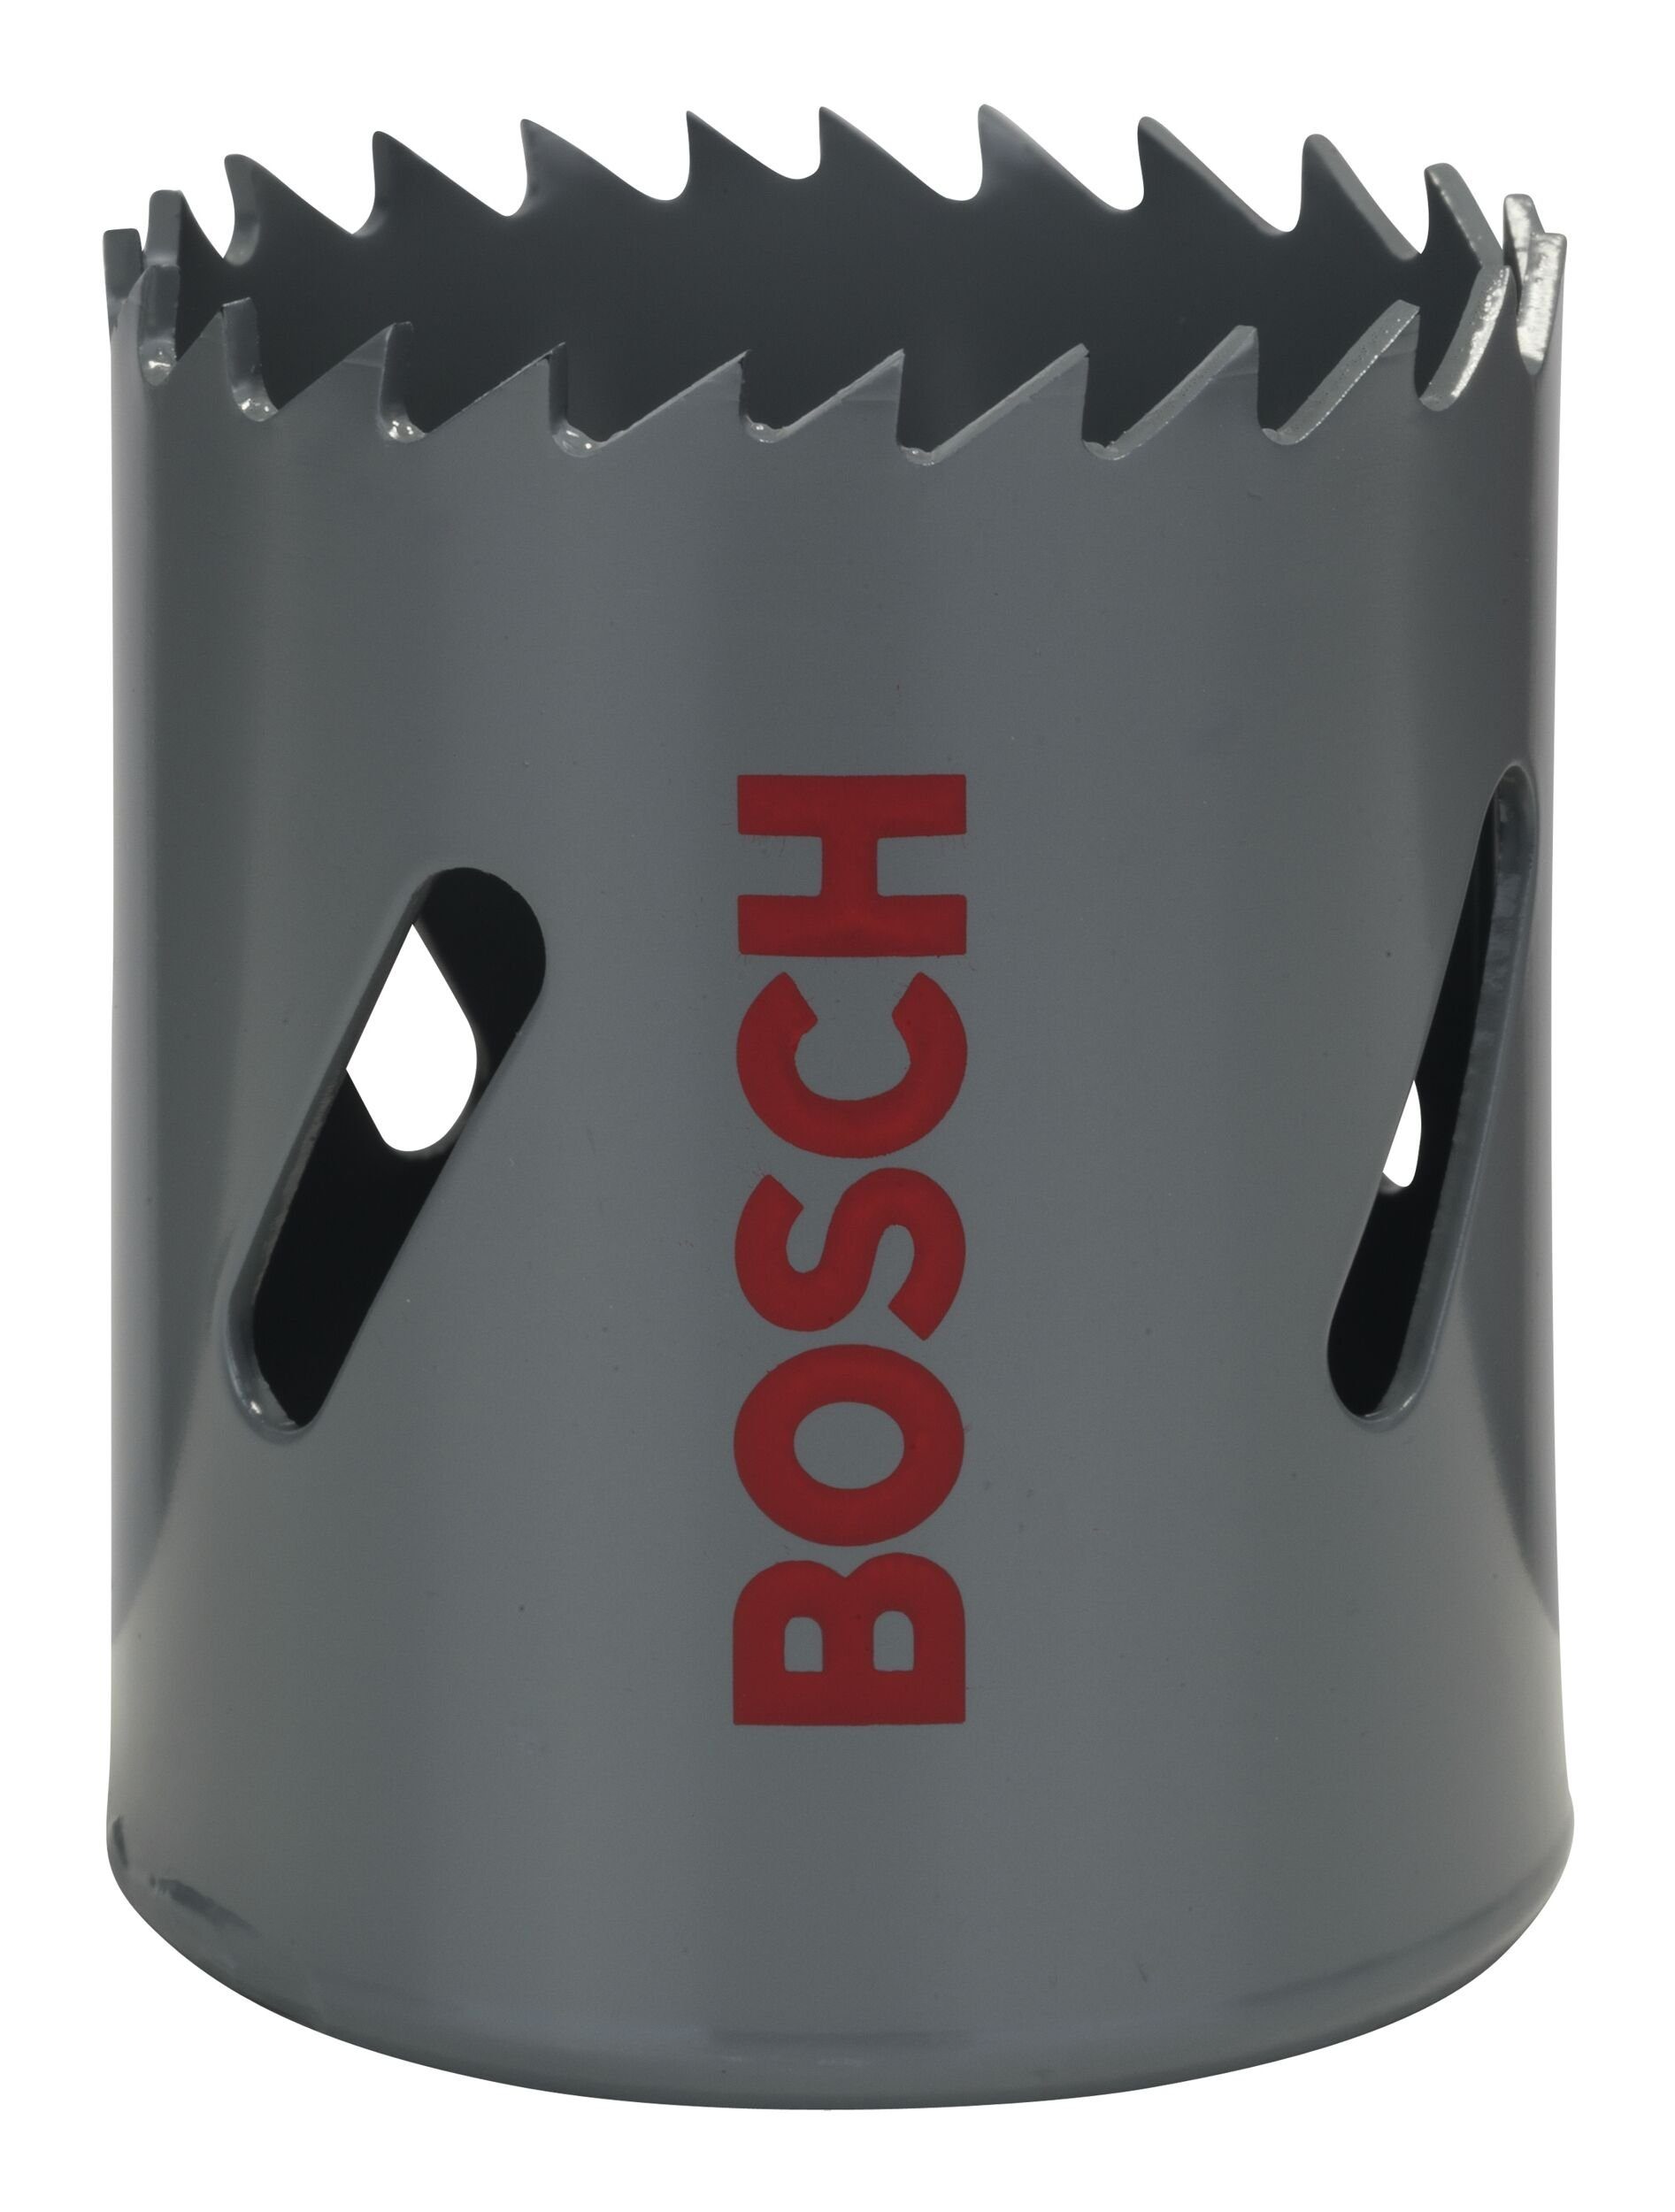 mm, BOSCH 44 1 - Lochsäge, HSS-Bimetall Ø für 3/4" Standardadapter /